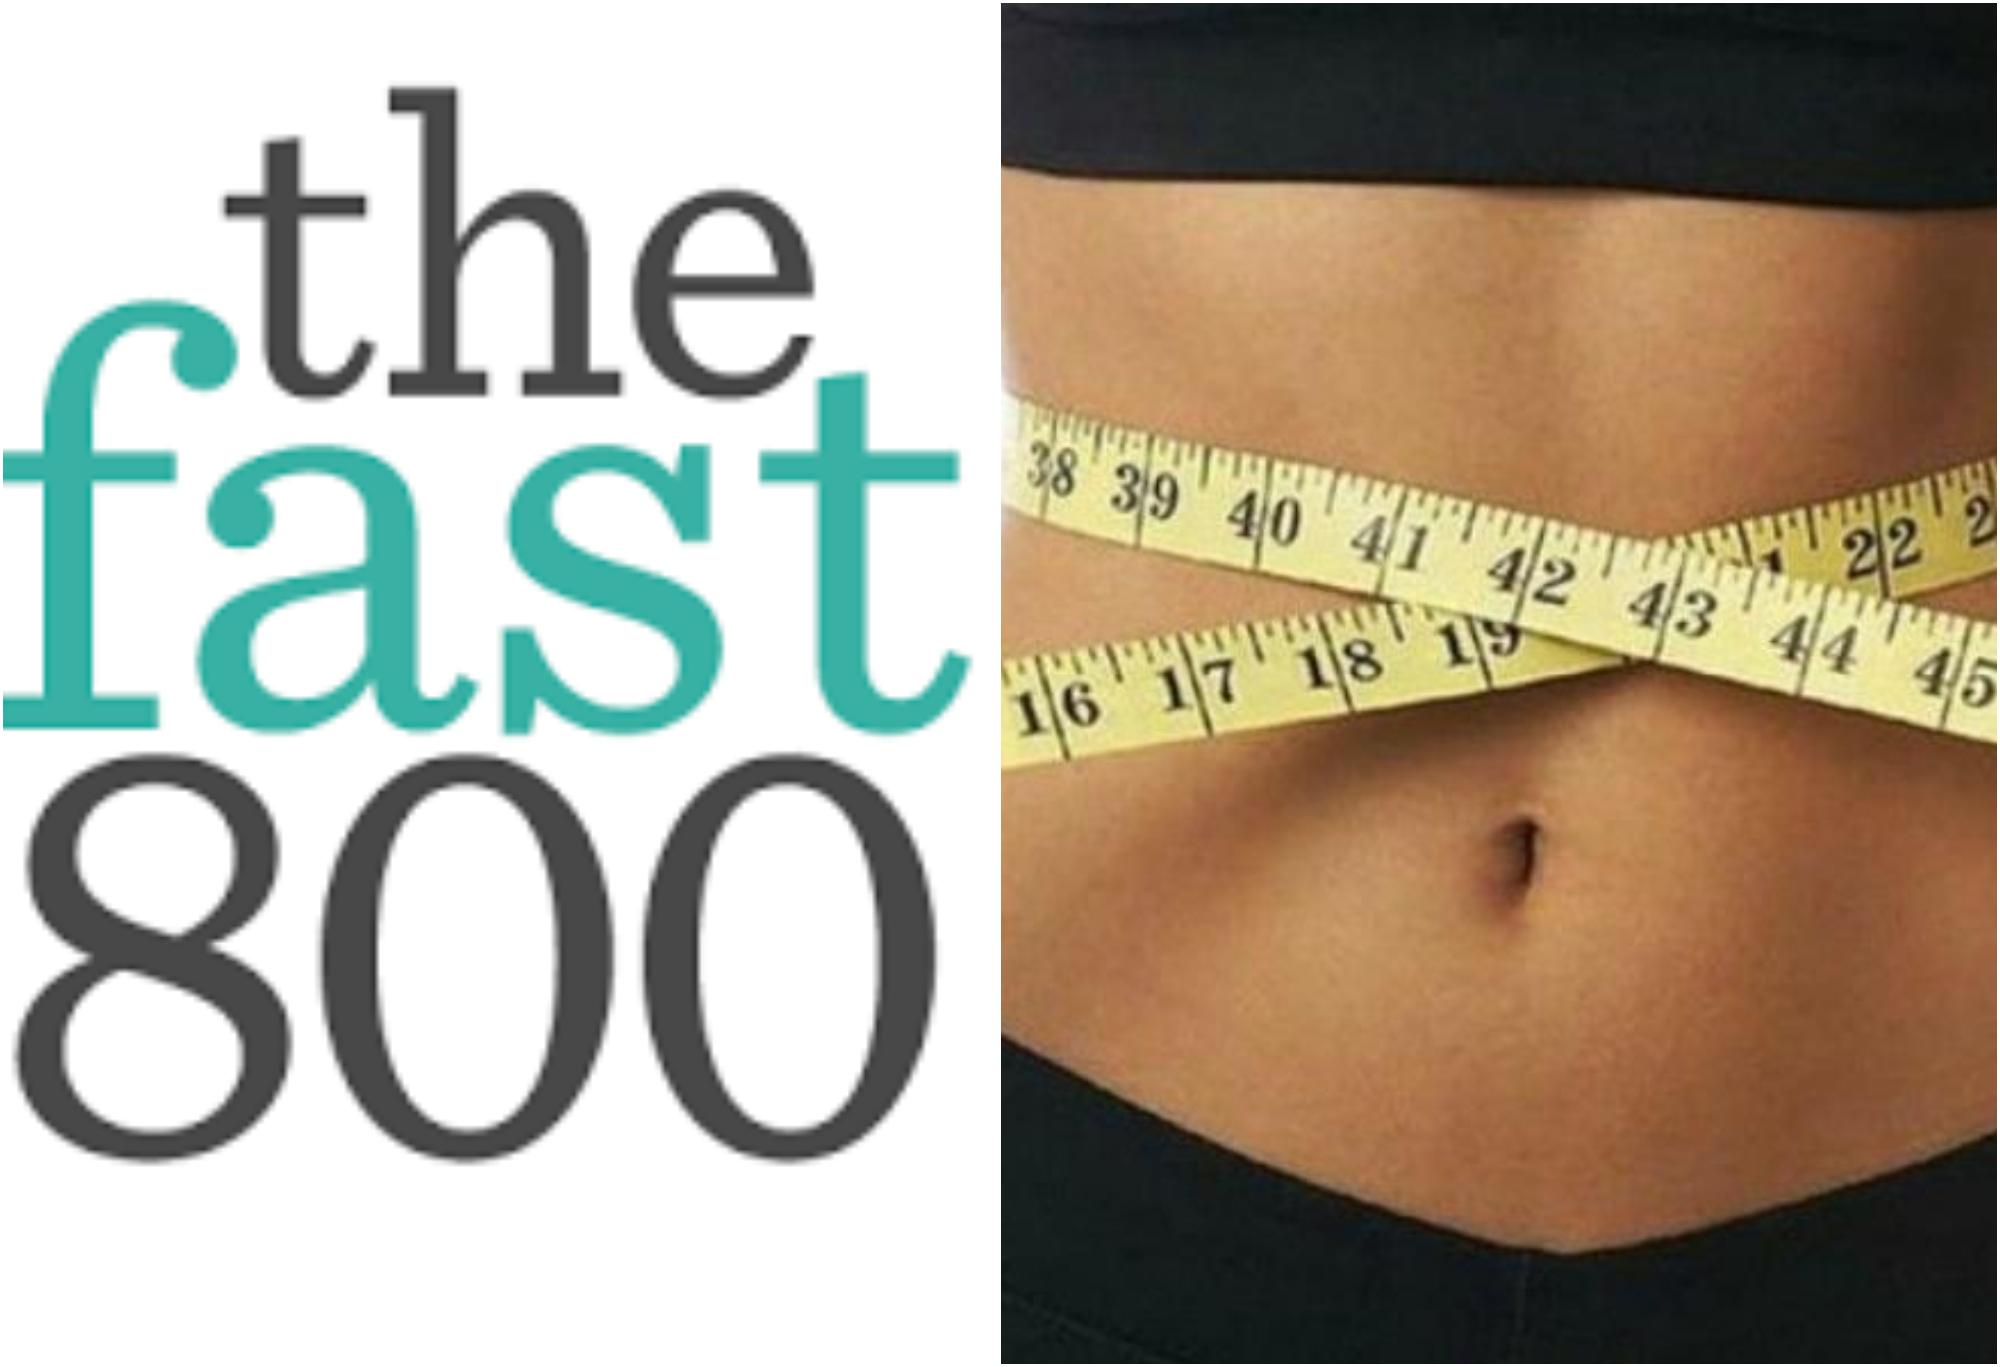 Δίαιτα Fast 800: Τι είναι ποια τα οφέλη και πόσο αποτελεσματική και ασφαλής είναι